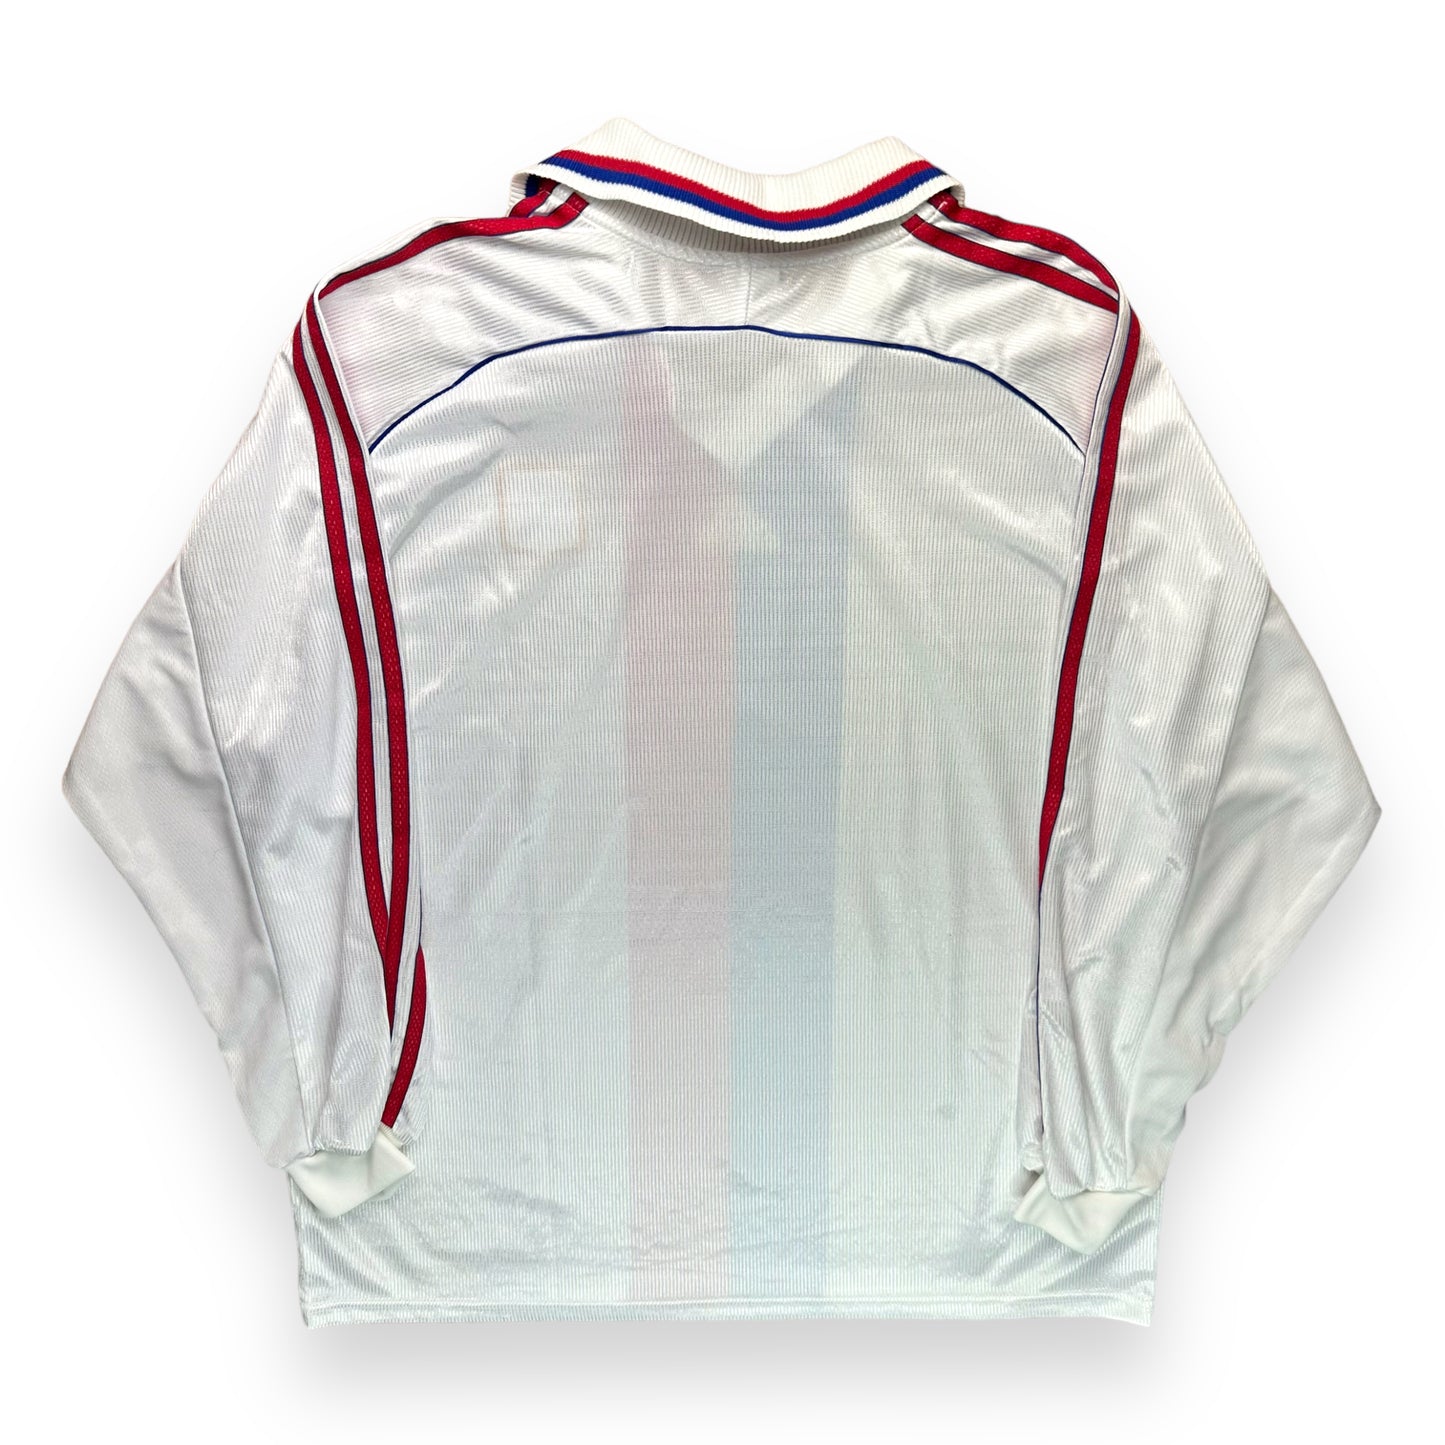 Lyon 1998-00 Home Shirt (XL)